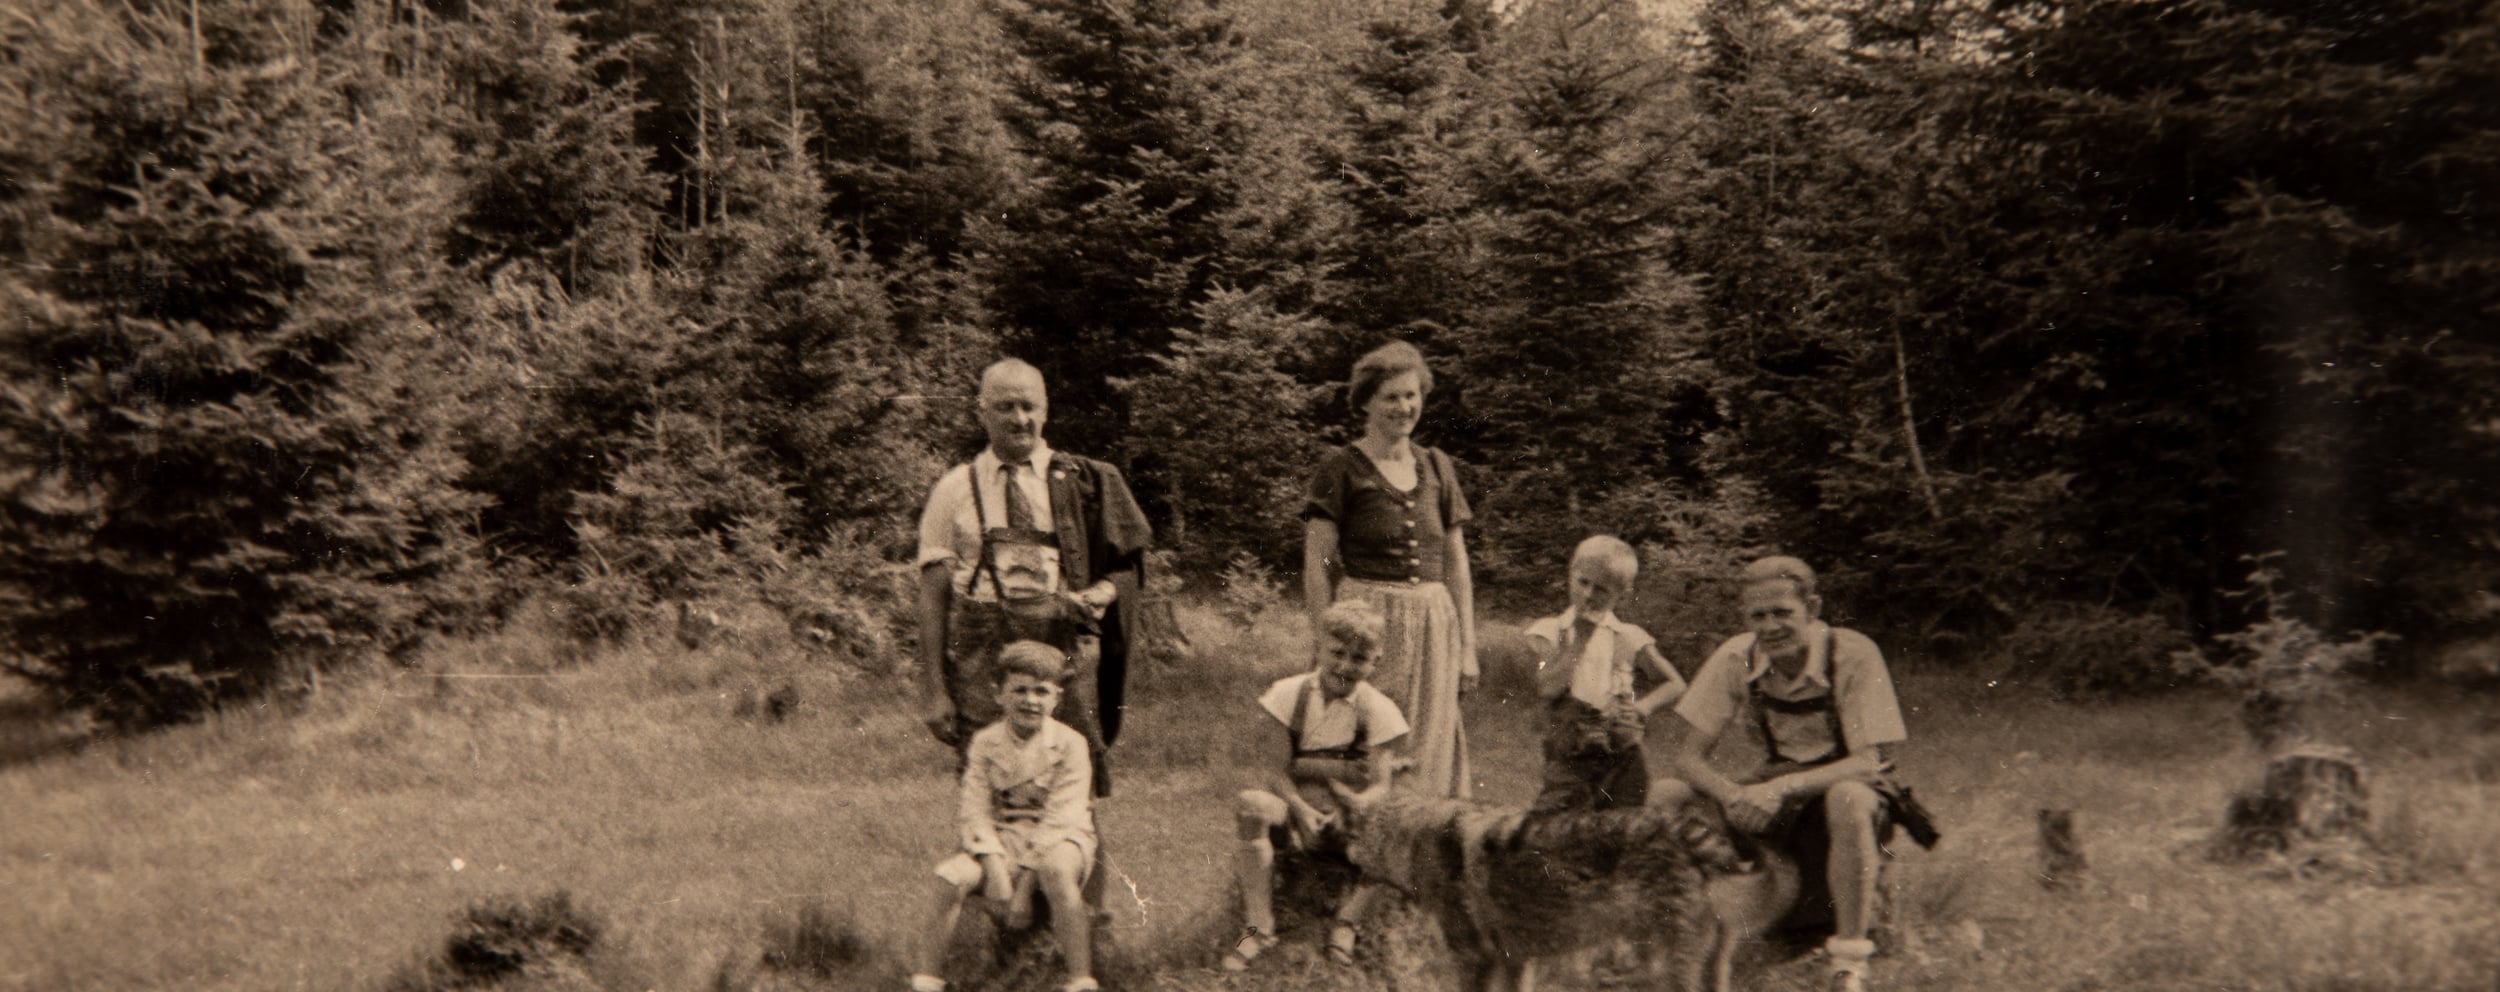 Eine alte Aufnahme der Familie Dilly auf einer Lichtung im Wald